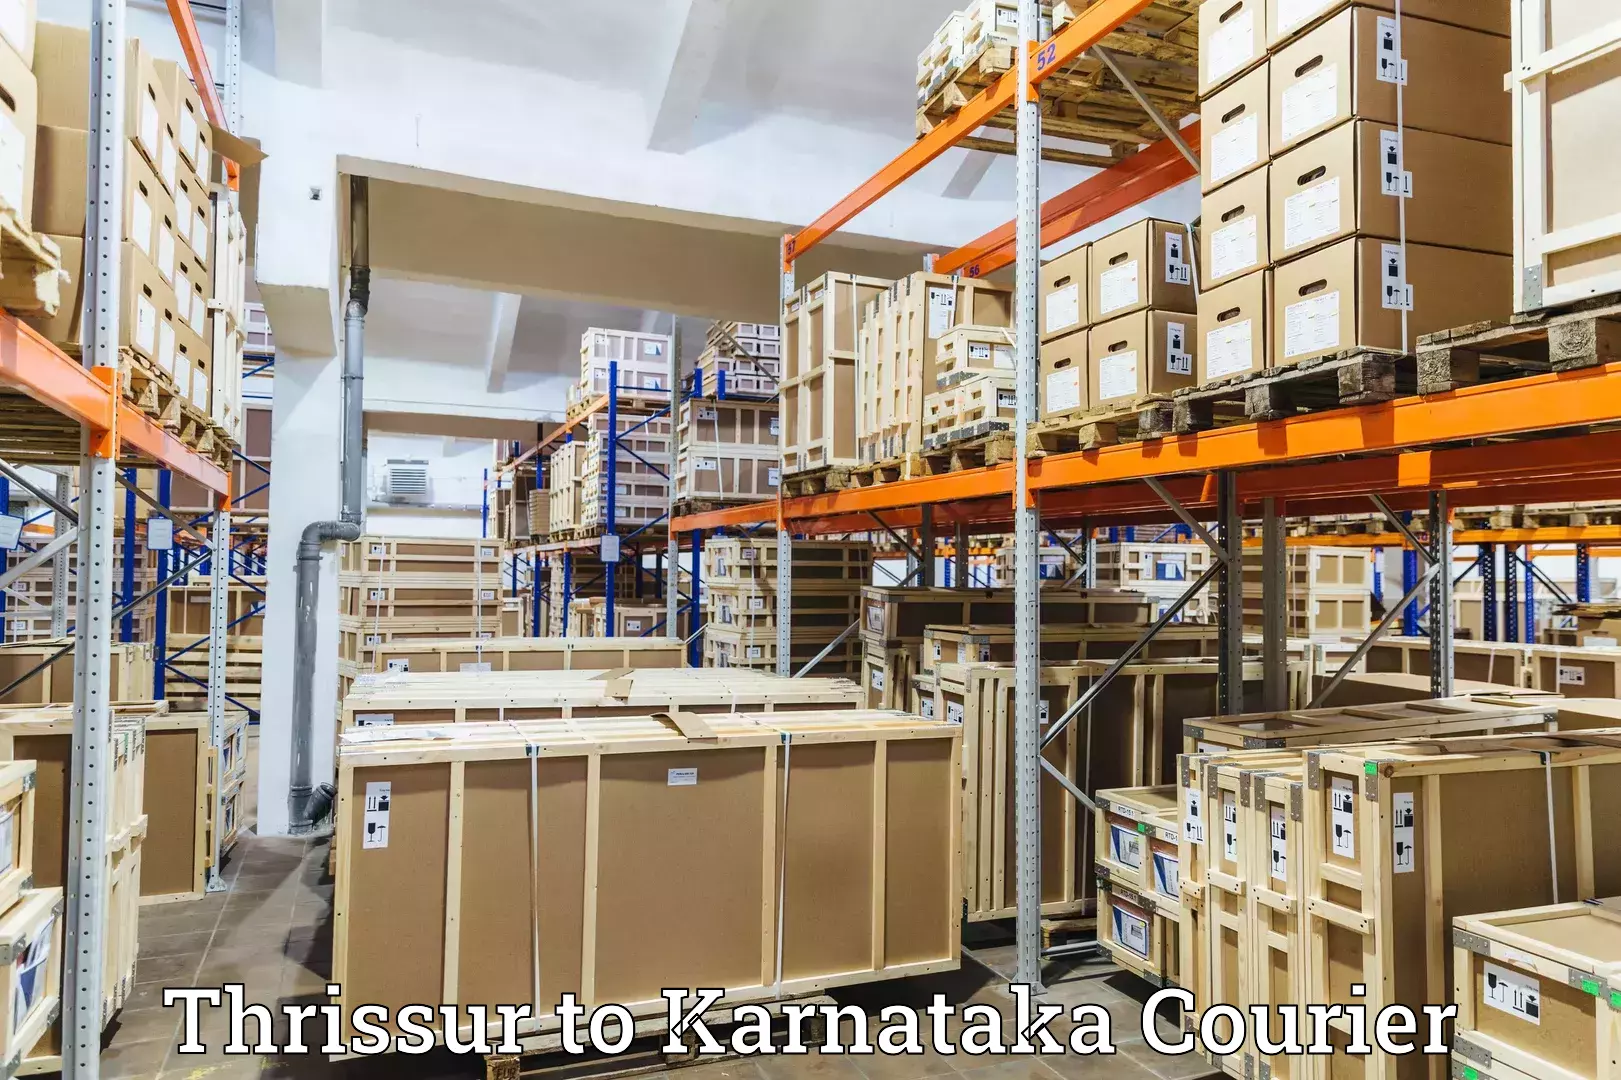 Customer-focused courier Thrissur to Karnataka